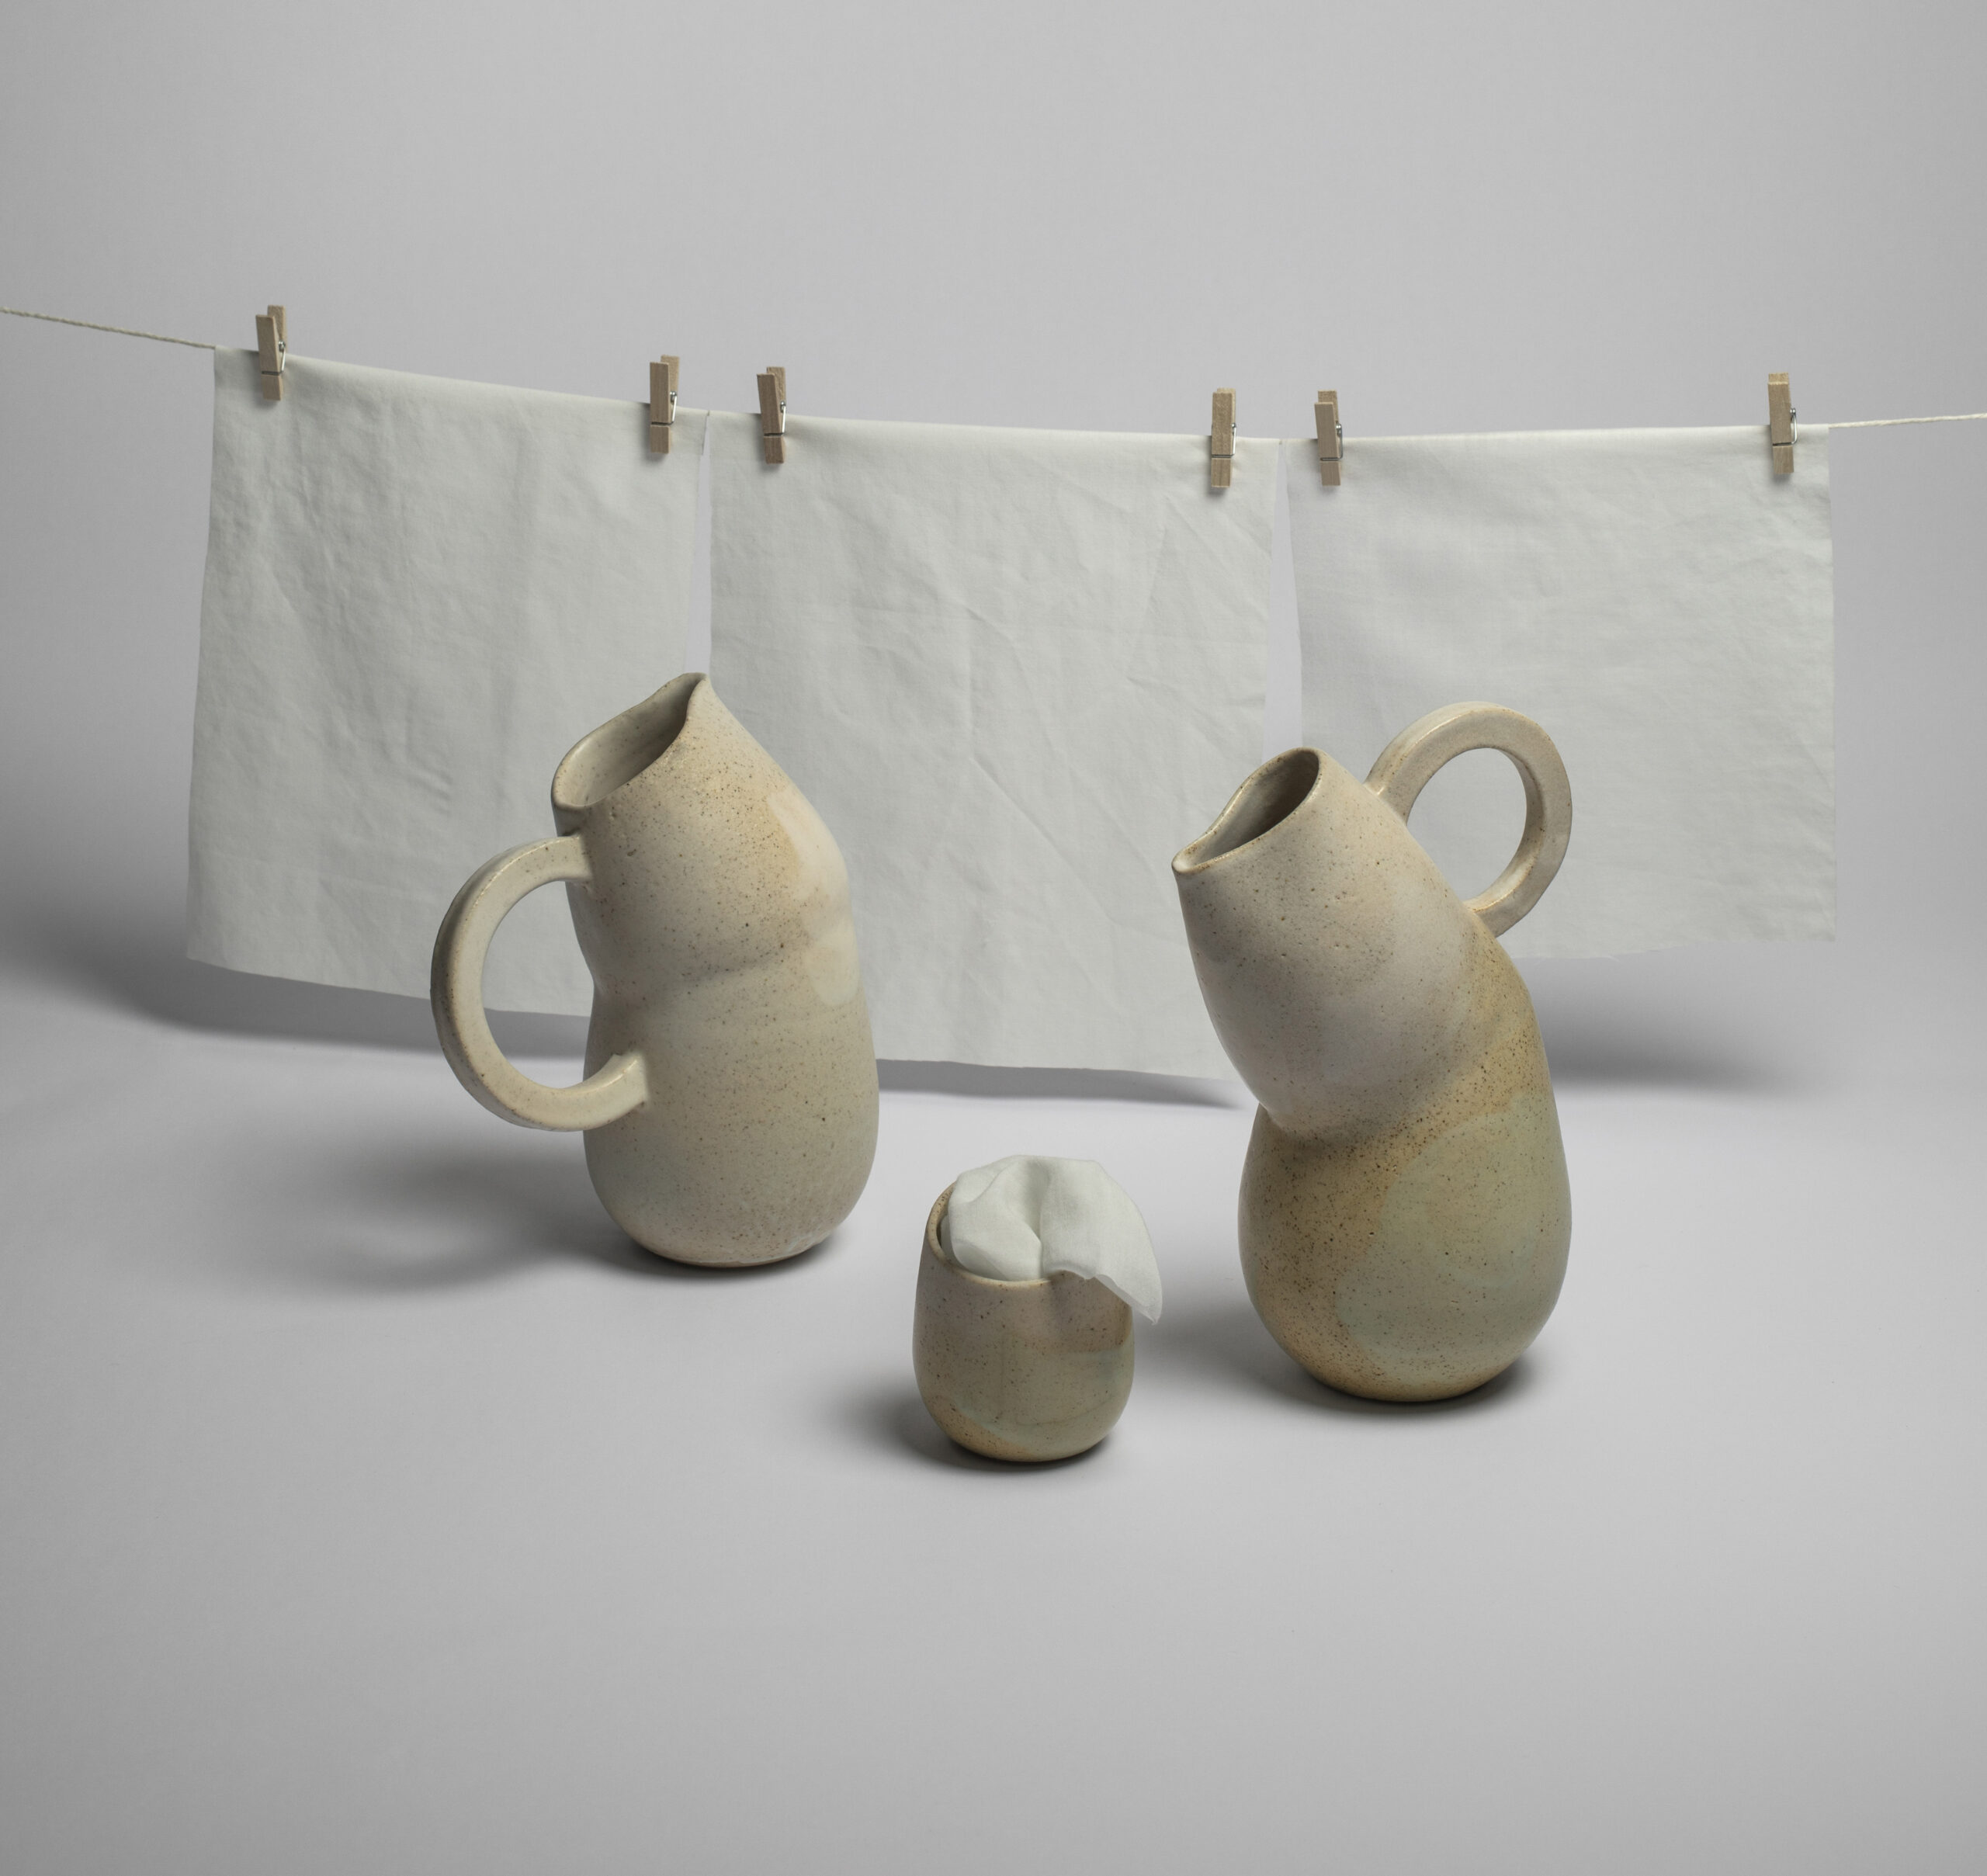 ANA ILLUECA: cerámica con historias mediterráneas que trasciende sus límites físicos